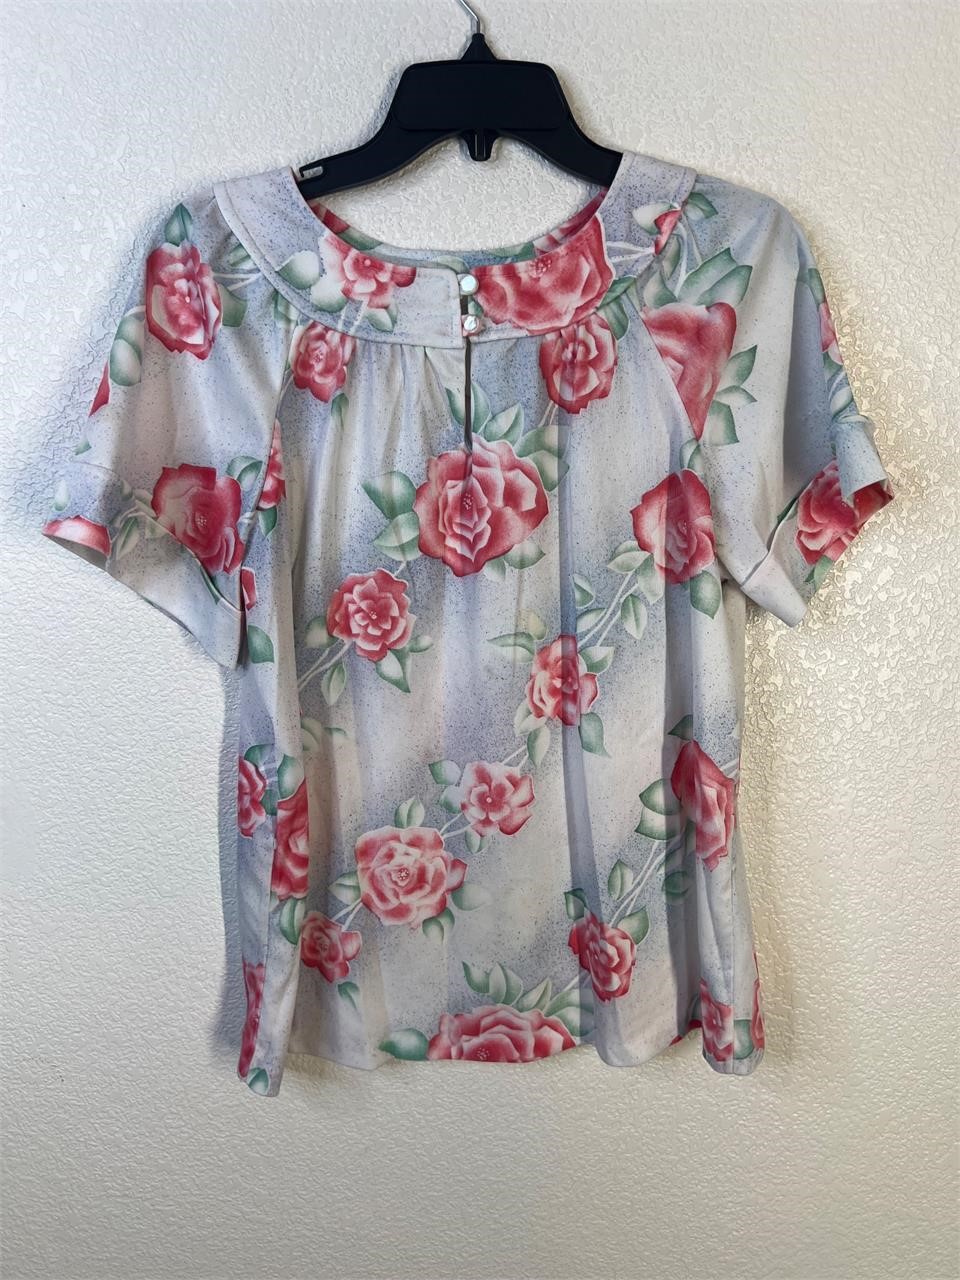 Vintage 70s Femme Rose Top Shirt